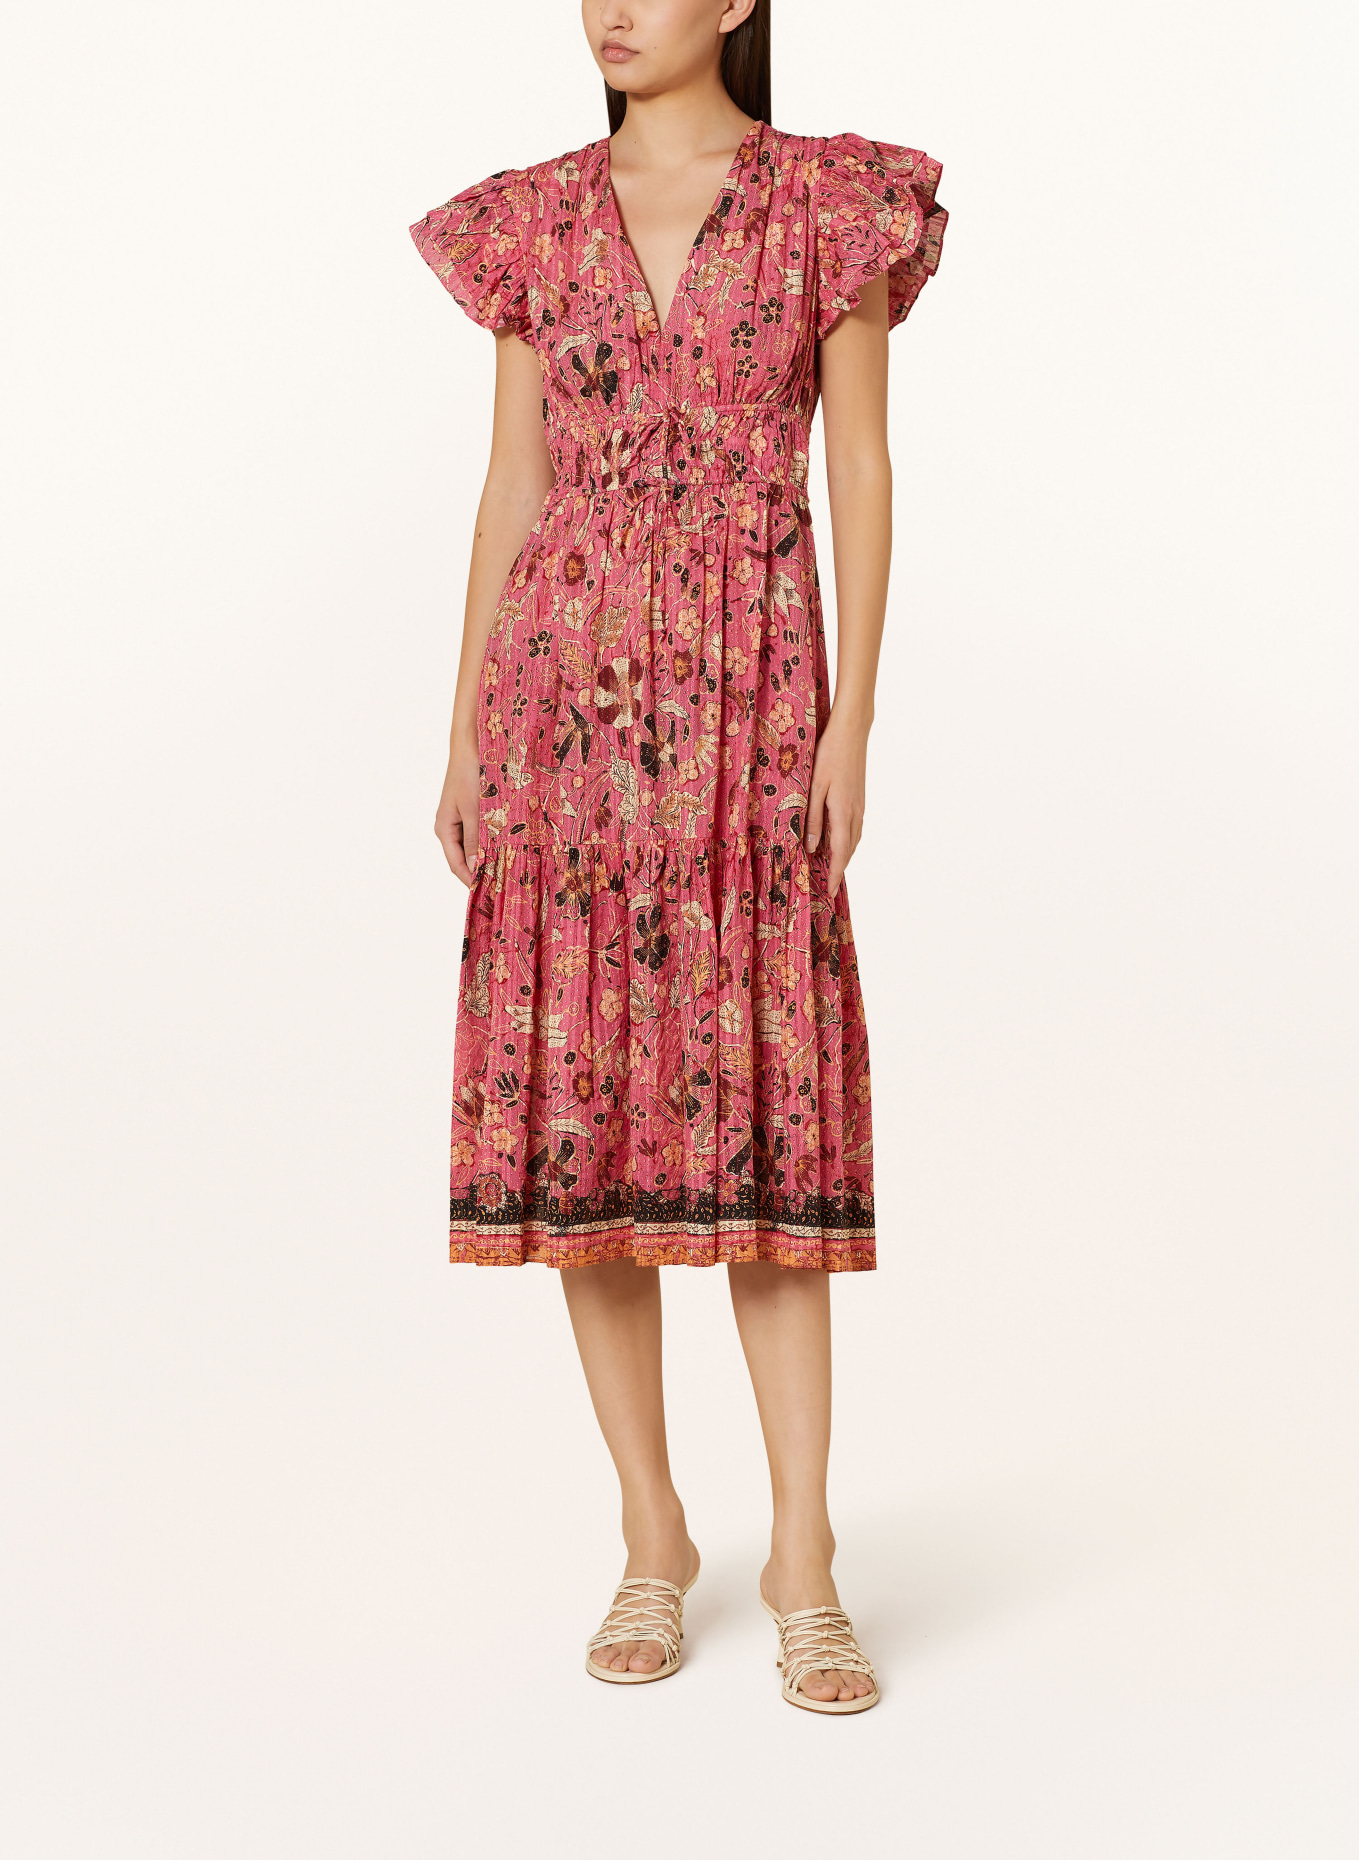 ULLA JOHNSON Kleid ANGELICA mit Volants, Farbe: PINK/ DUNKELROT/ SCHWARZ (Bild 2)